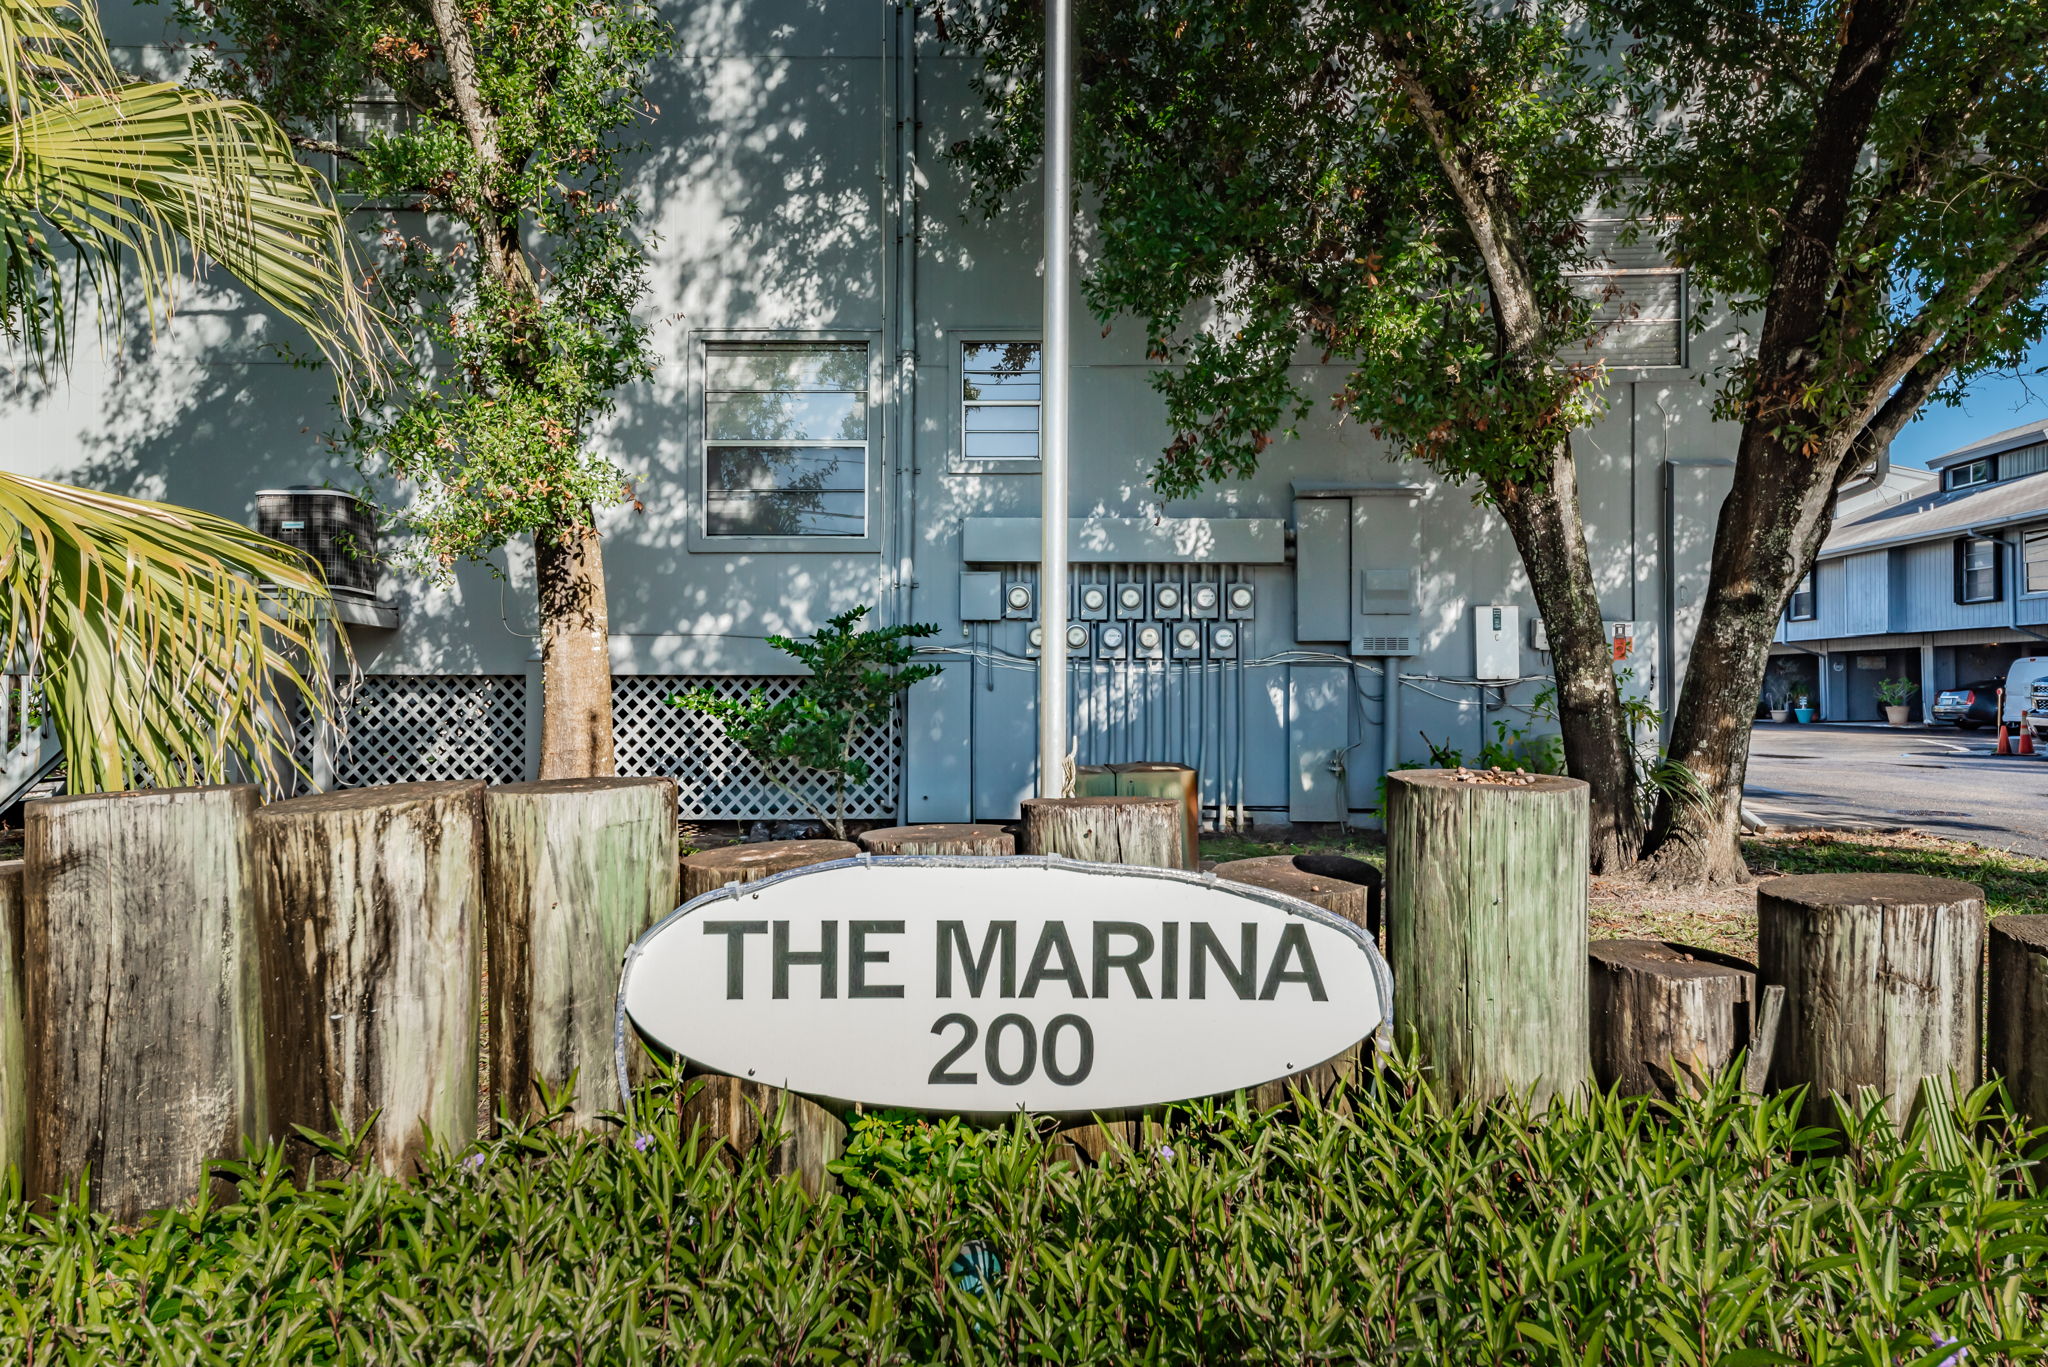 43-The Marina